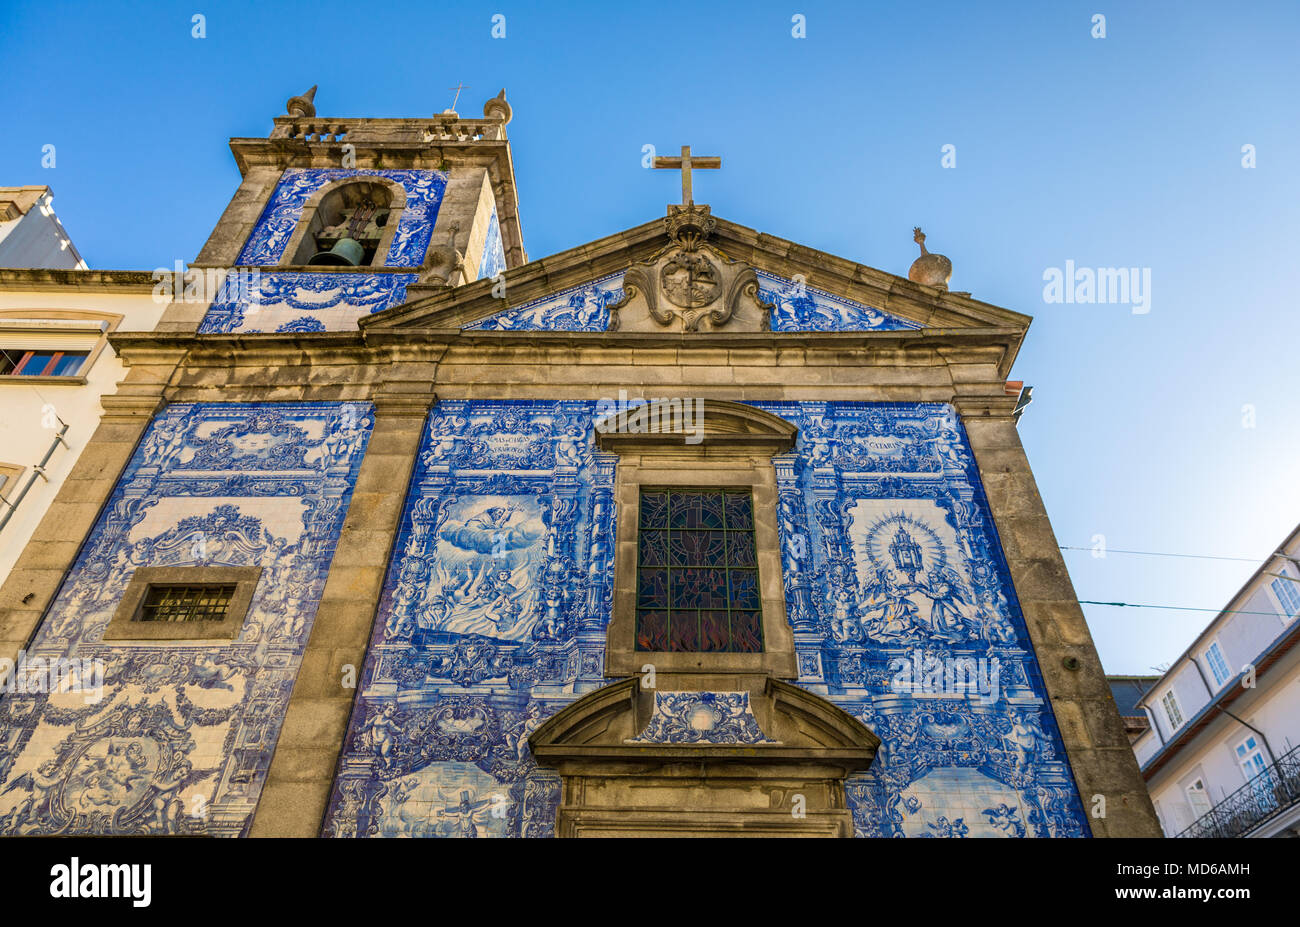 Traditionelle historische Fassade in Porto verziert mit blauen handgemalten Zinn-glasierte Fliesen, Porto, Portugal Stockfoto